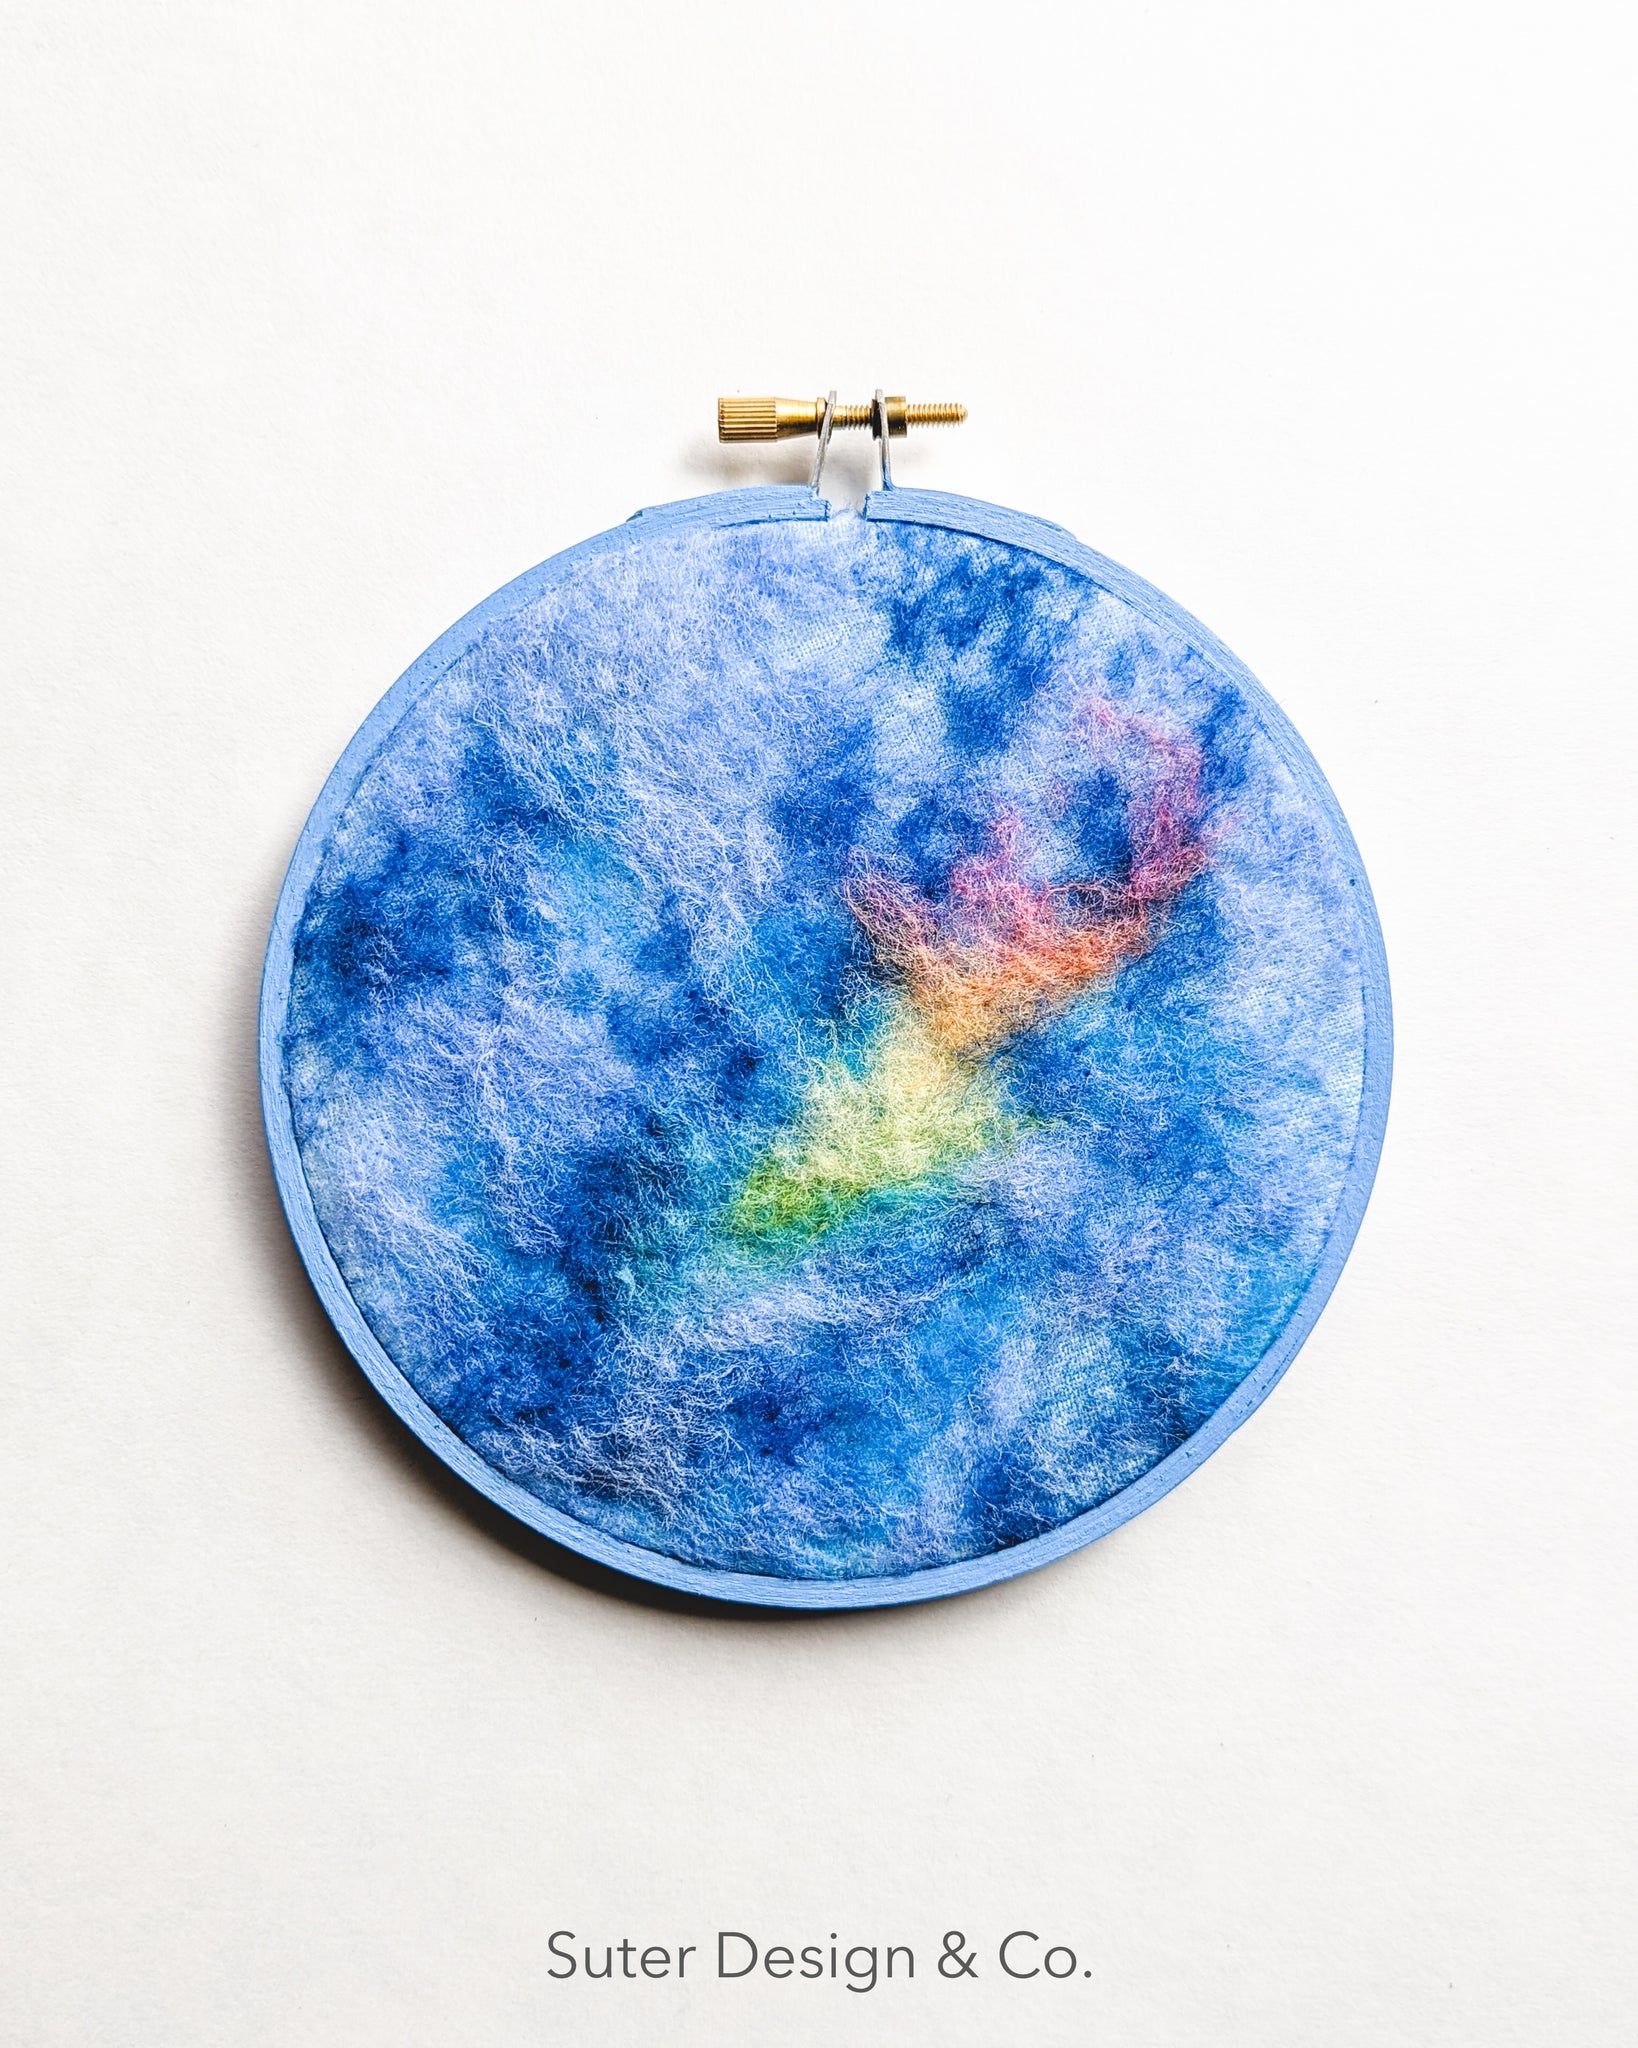 Fire Rainbow no. 2 - Serendipitous Clouds - 5 inch hoop art